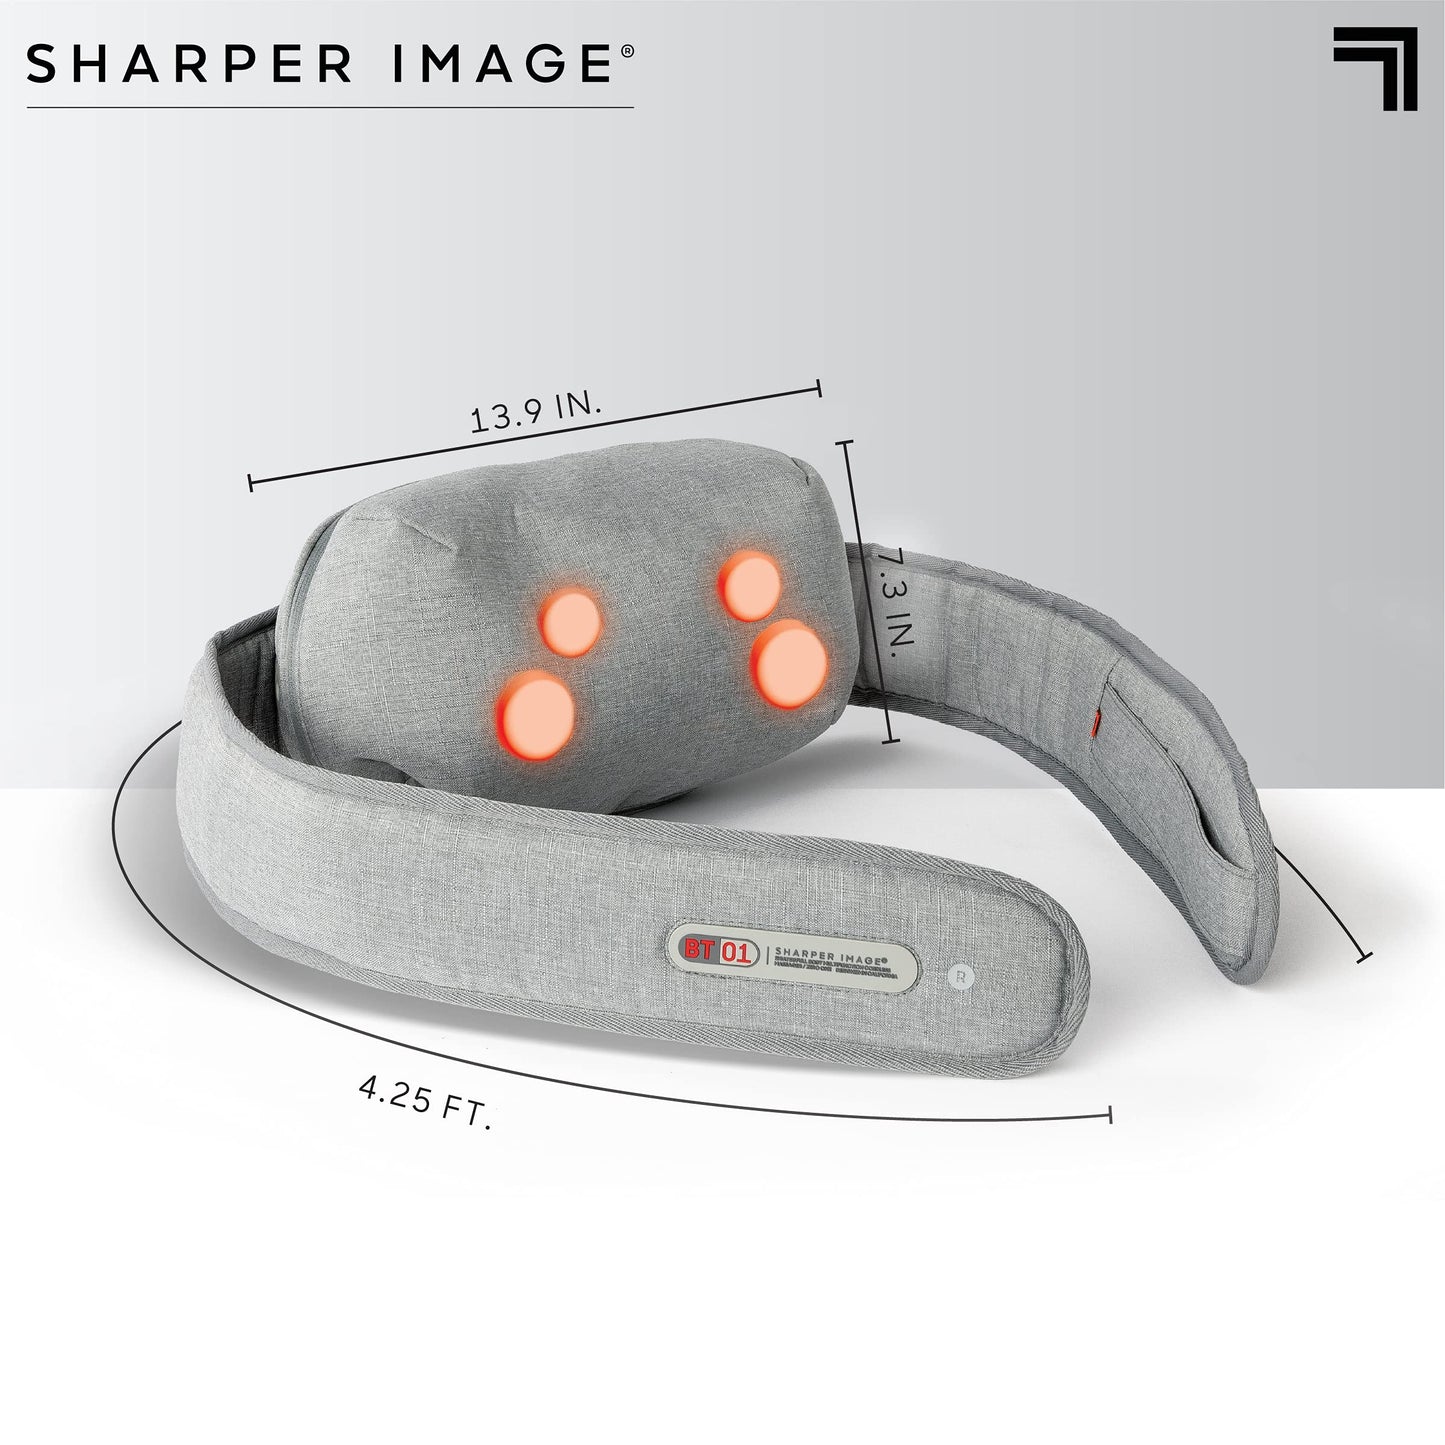 Sharper Image Multi-Function Full Body Cordless Massager